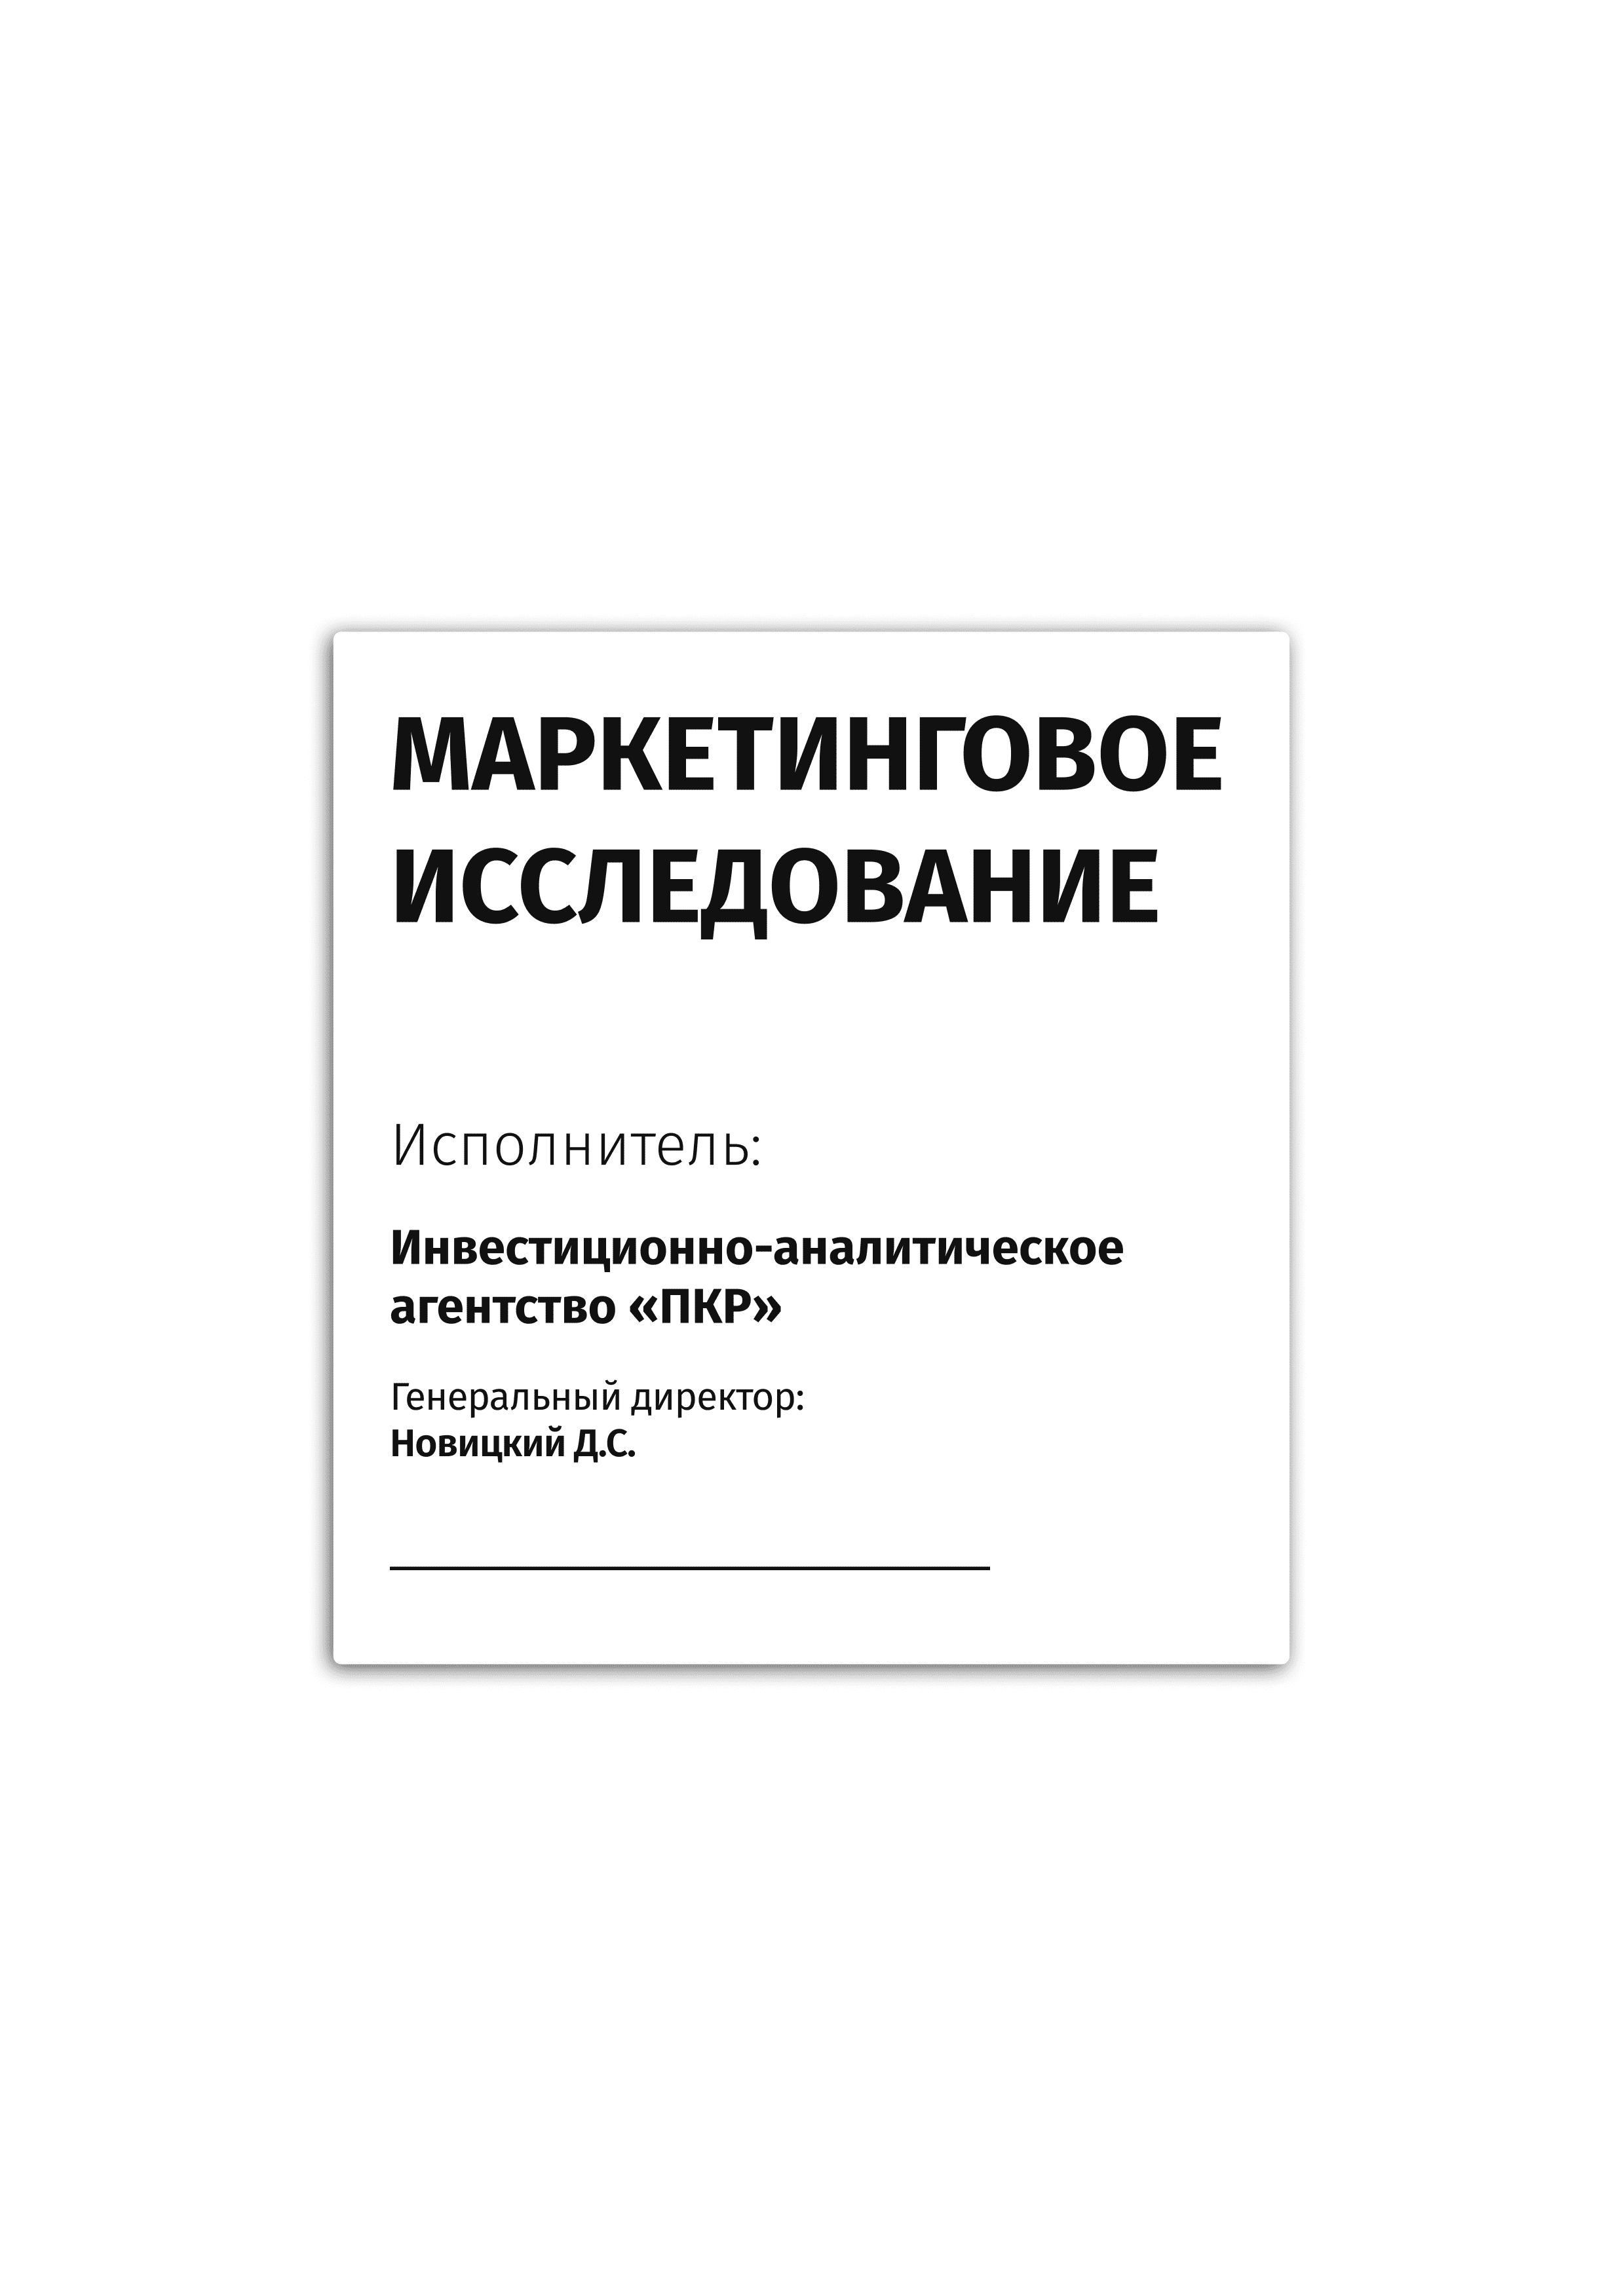 Рынок санаторно-курортных услуг России - обзор демо-версии отчета